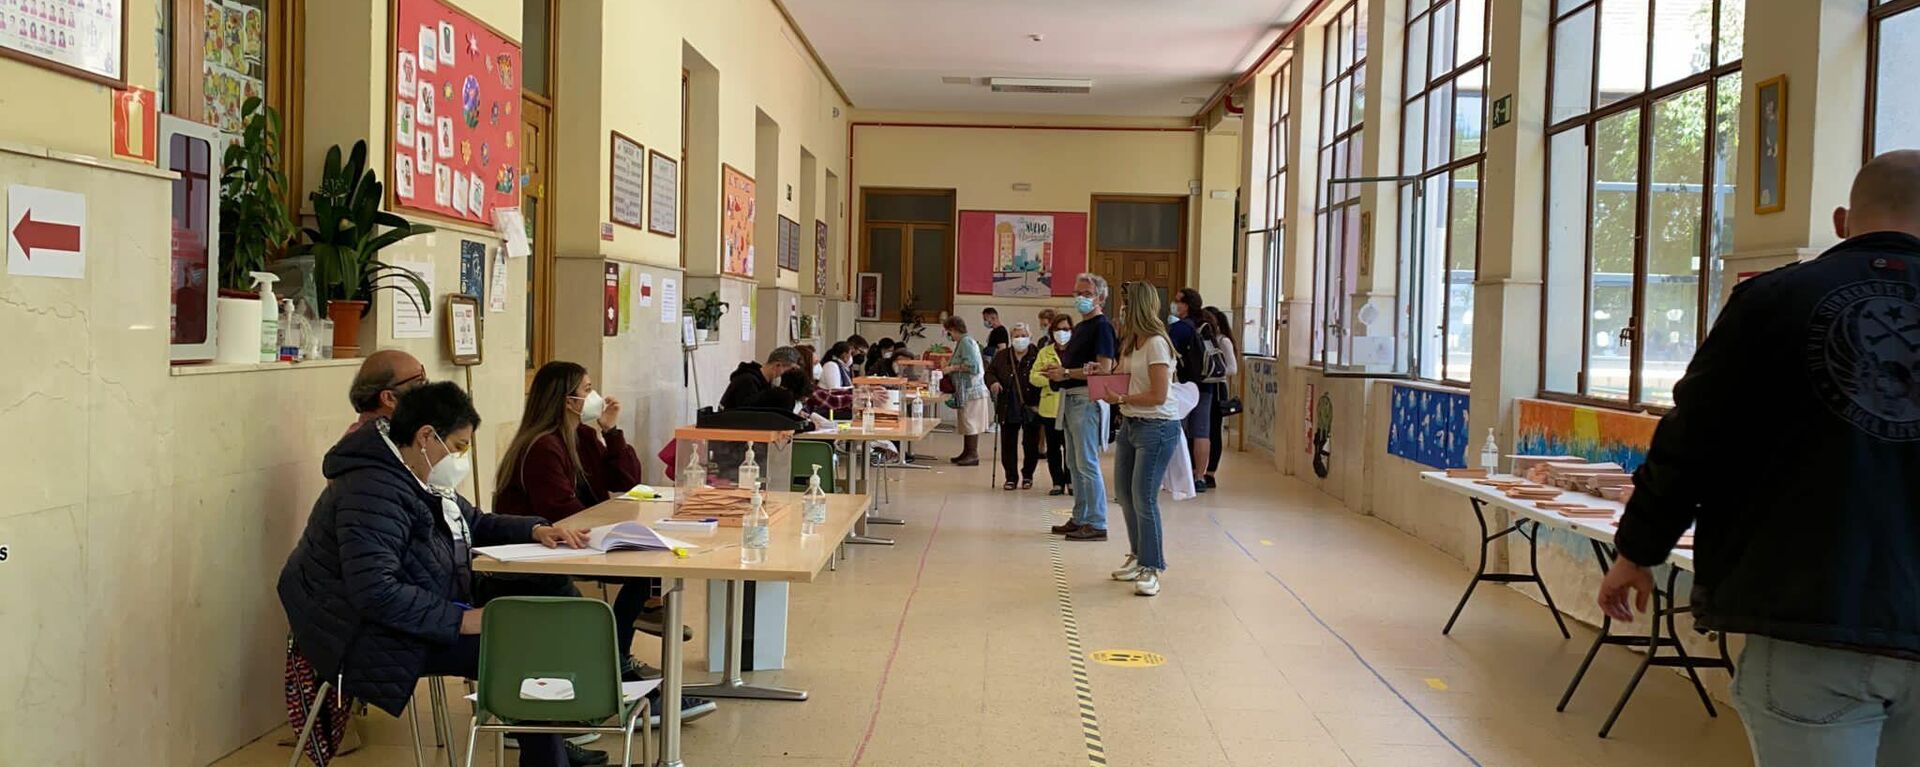 Interior de un colegio electoral en Puerta del Ángel en las elecciones del 4 de mayo a la Comunidad de Madrid - Sputnik Mundo, 1920, 04.05.2021